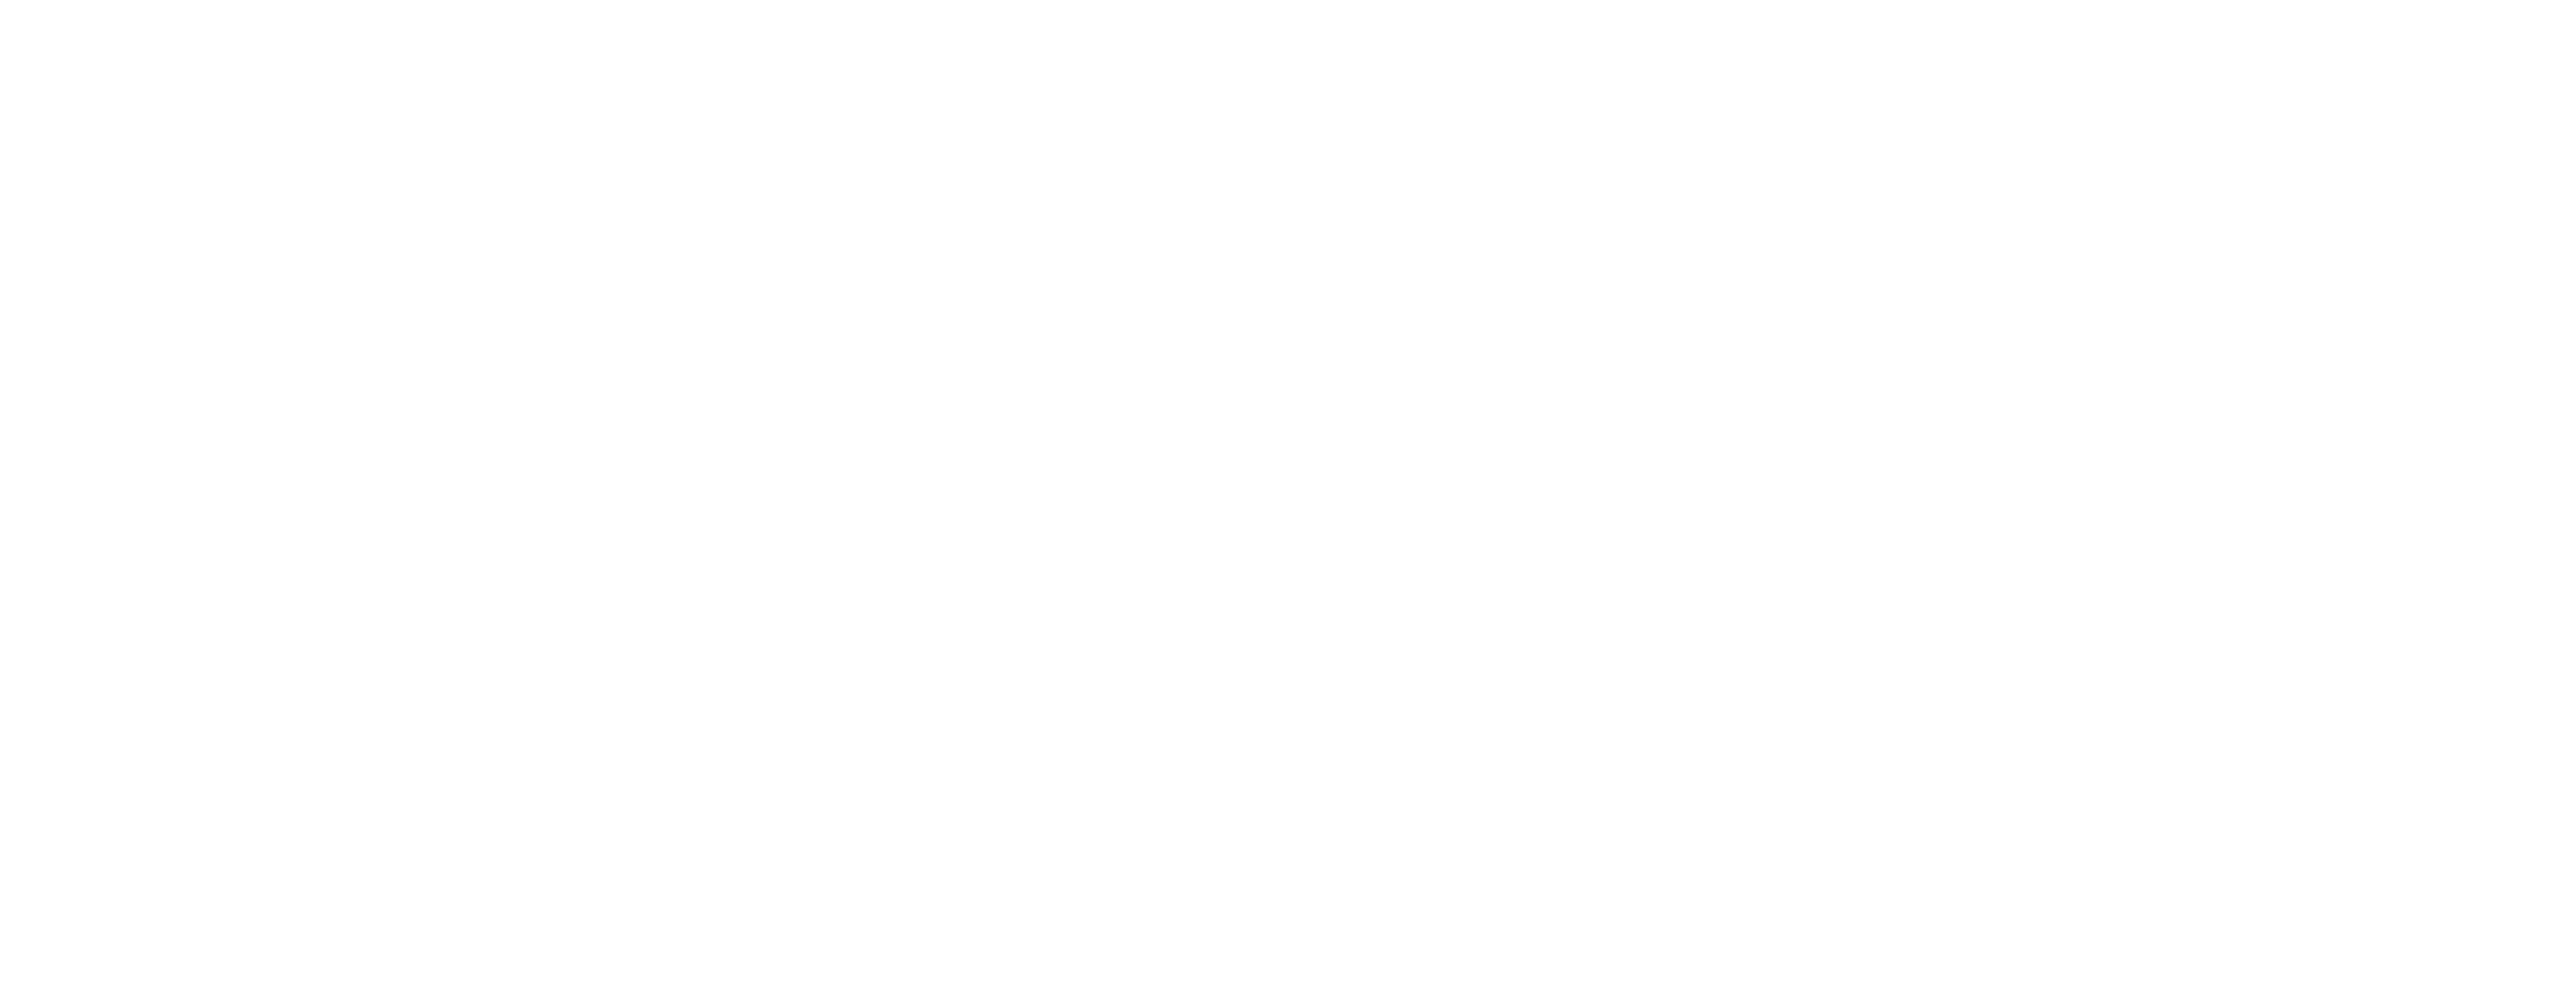 Sartorius Logo White